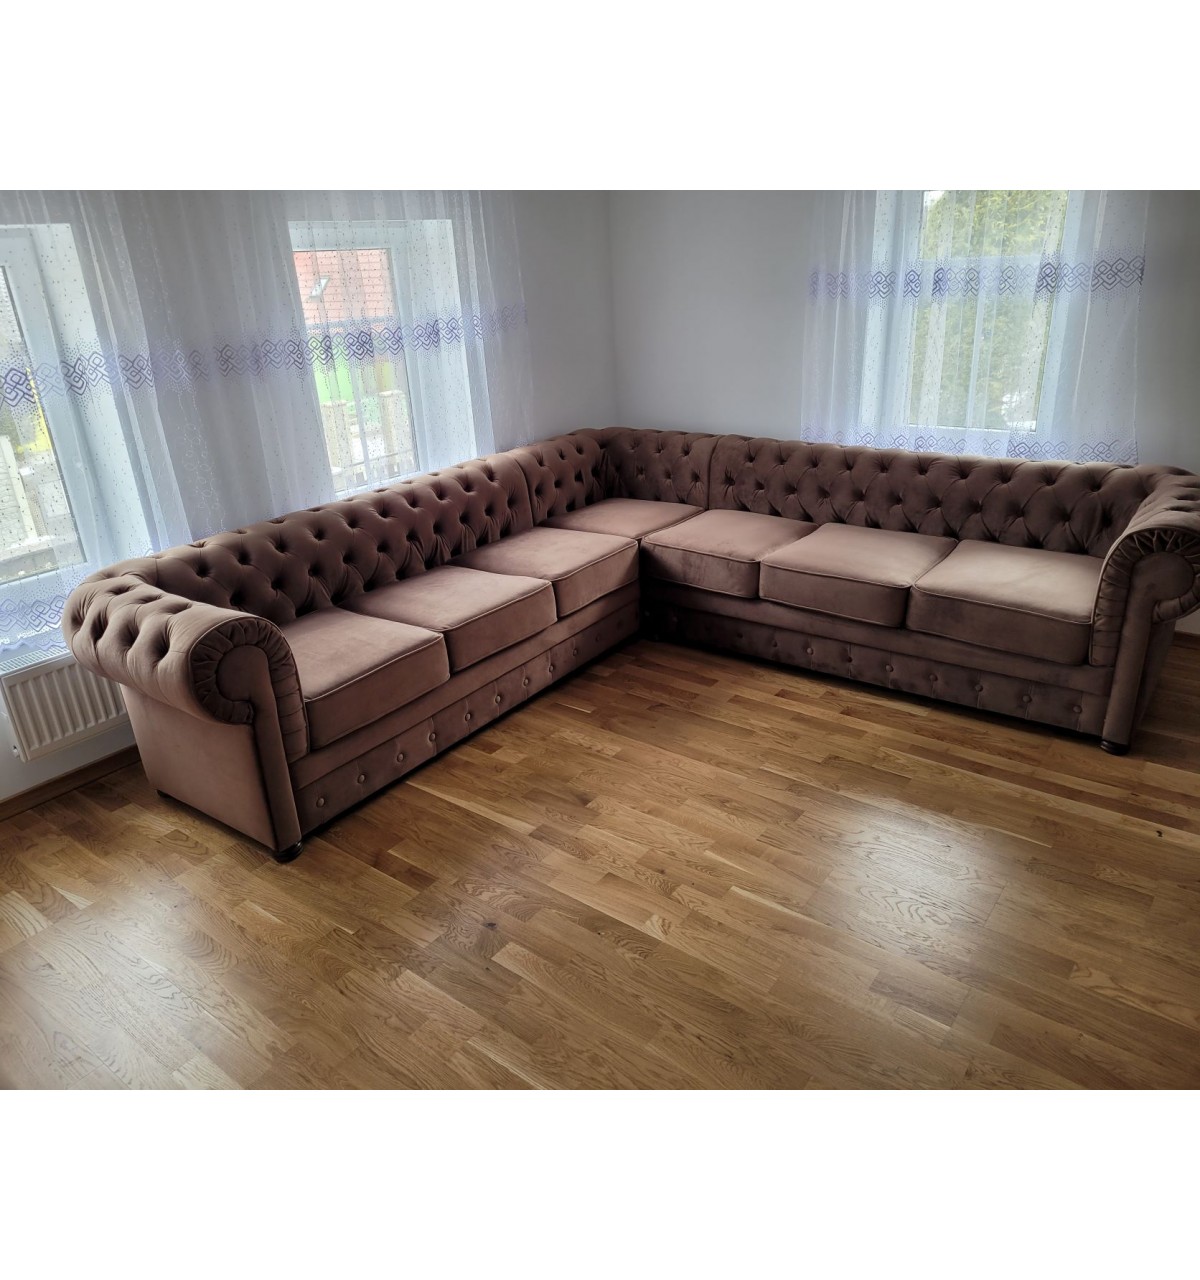 Sofa narożna Chesterfield Gdańsk